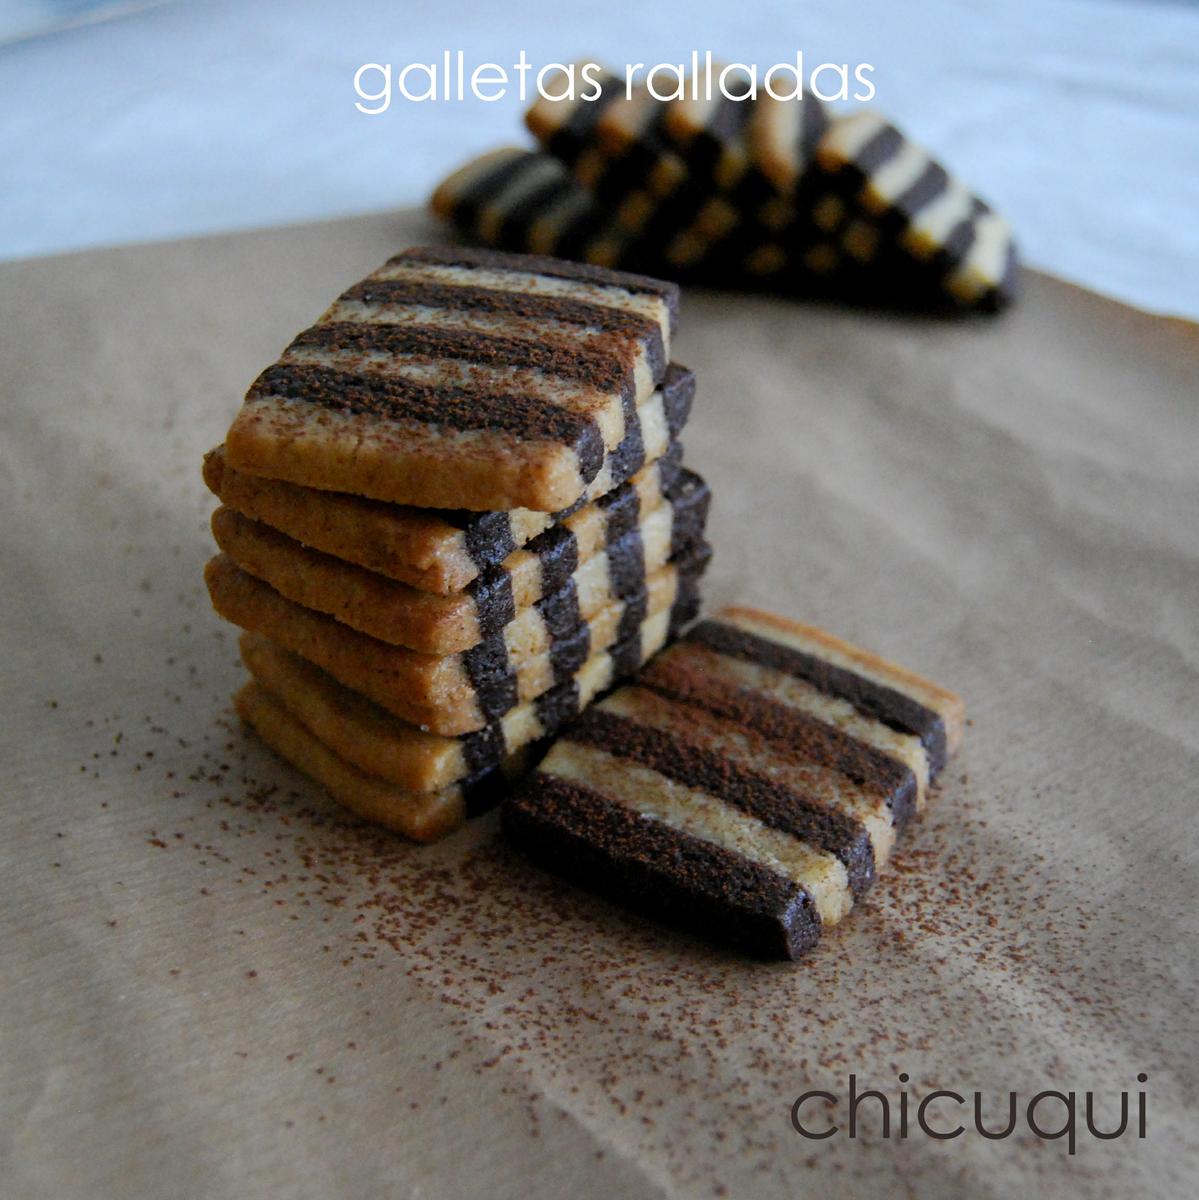 receta-de-galletas-ralladas-vainilla-y-chocolate-chicuqui.com